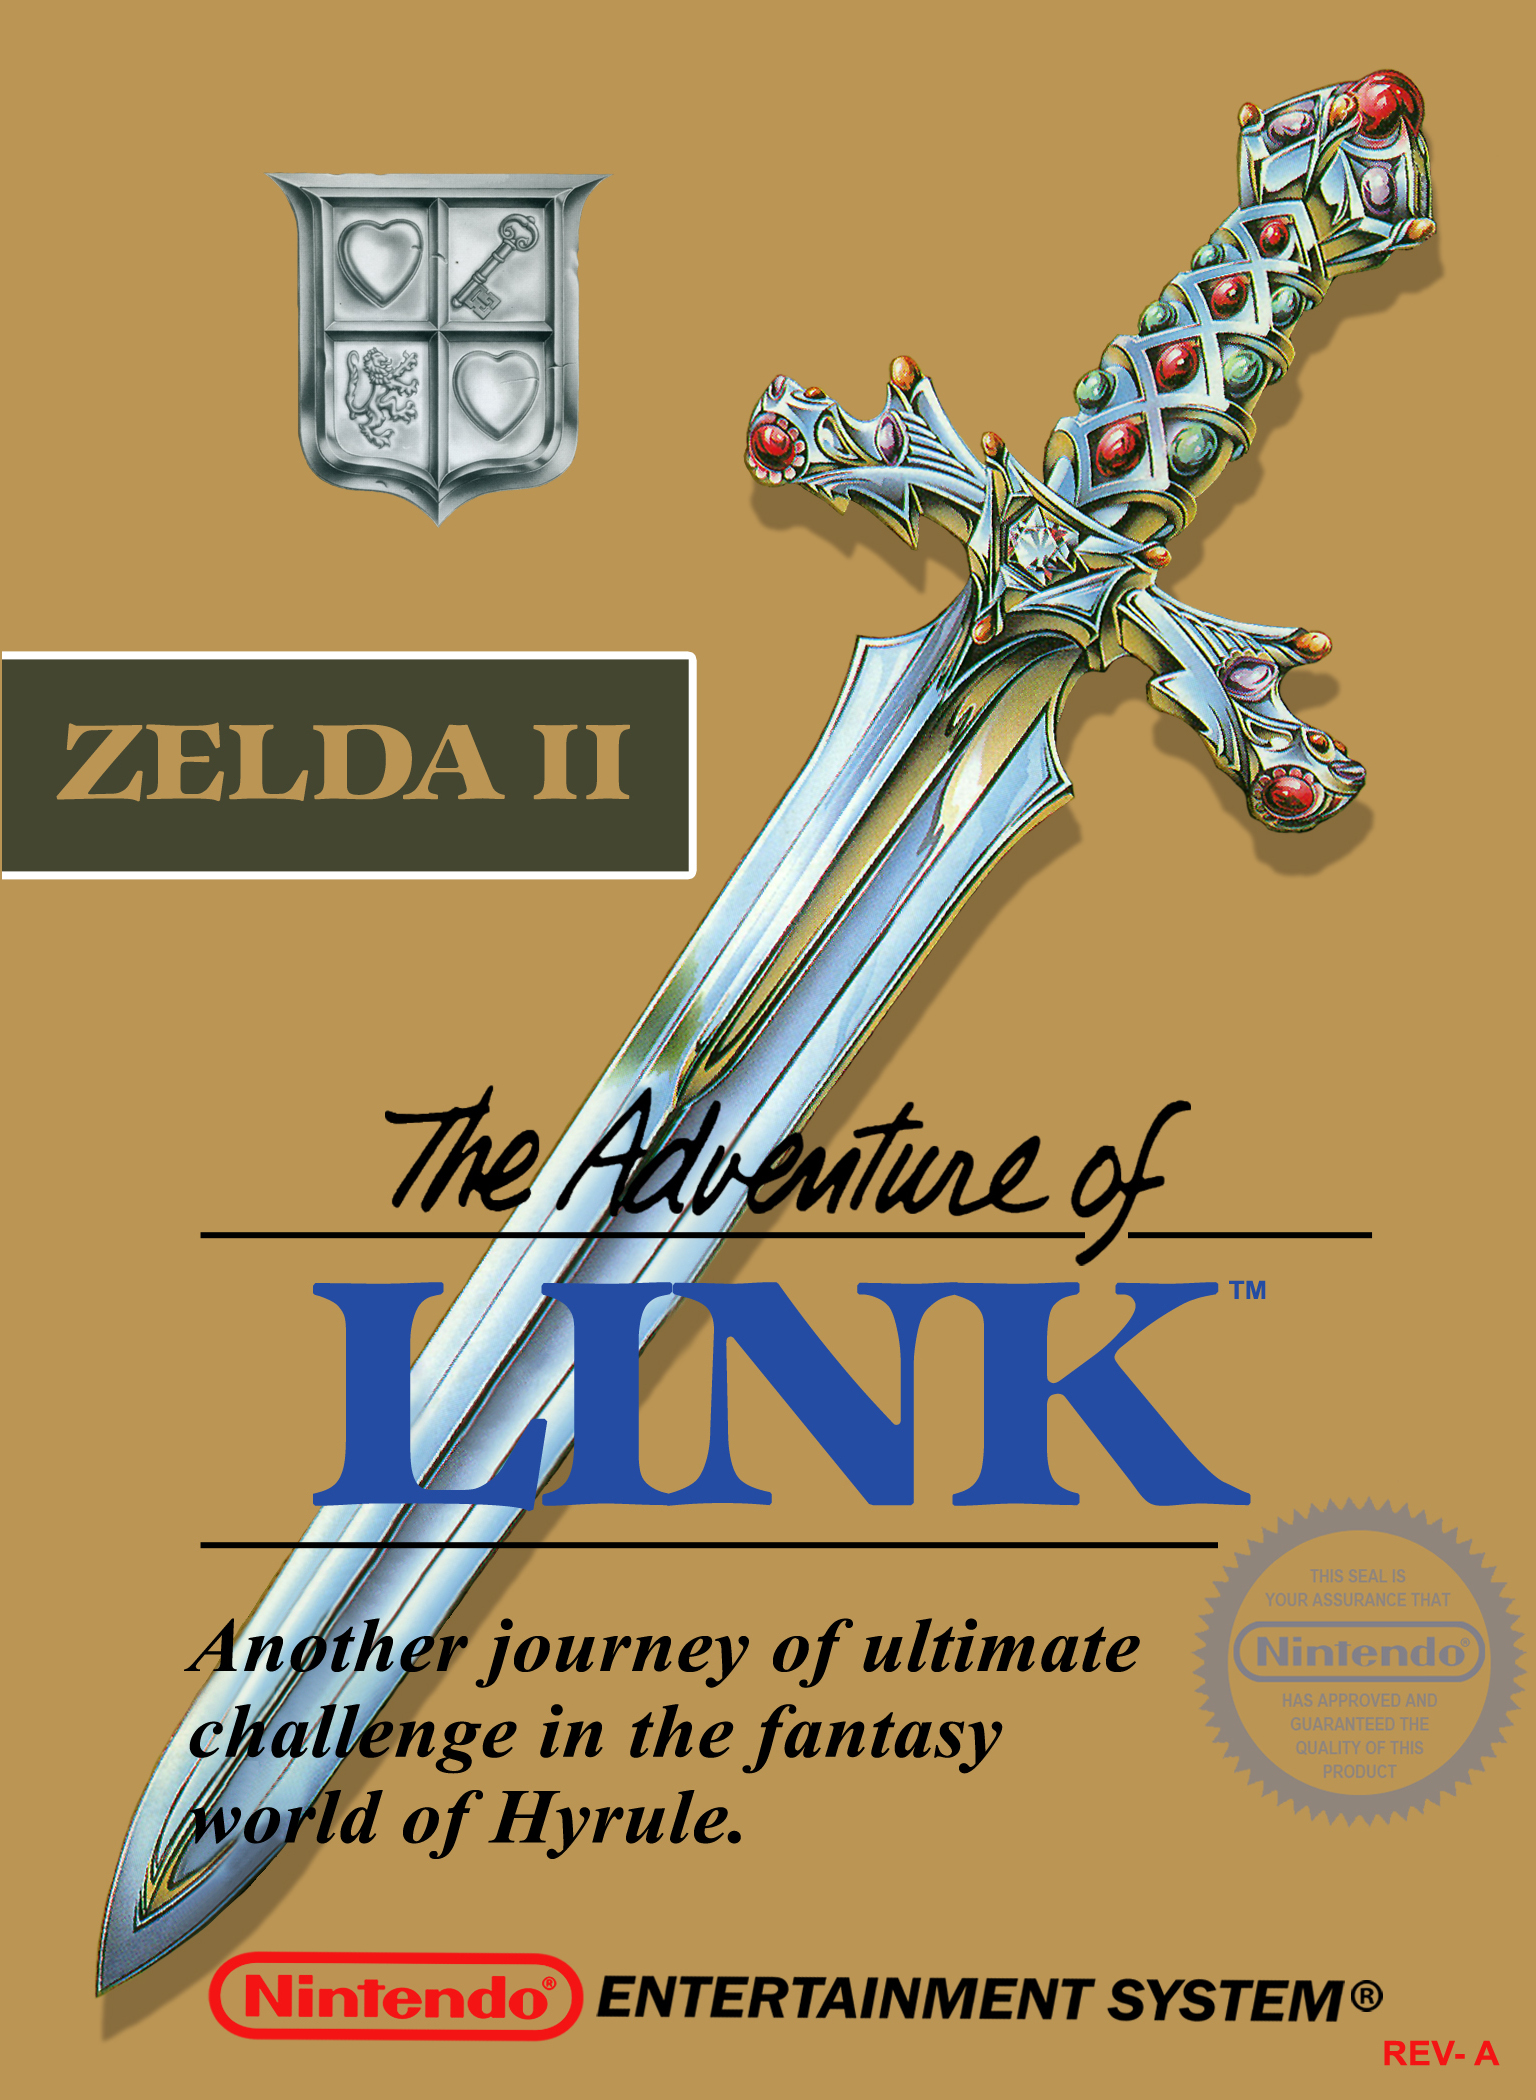 Zelda II: The Adventure of Link Details Games